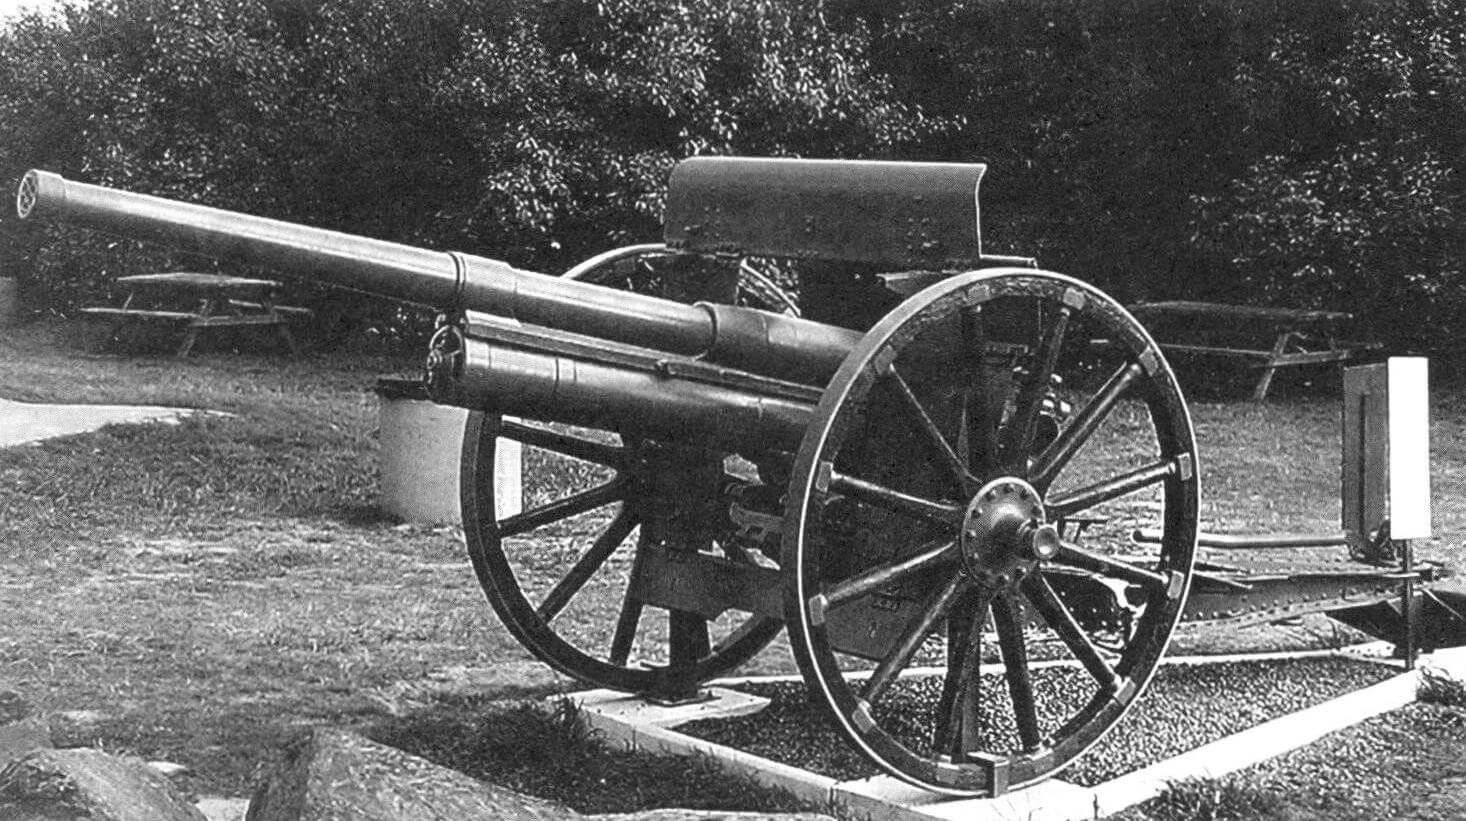 76-мм пушка обр. 1902/30 гг. с длиной ствола 40 калибров